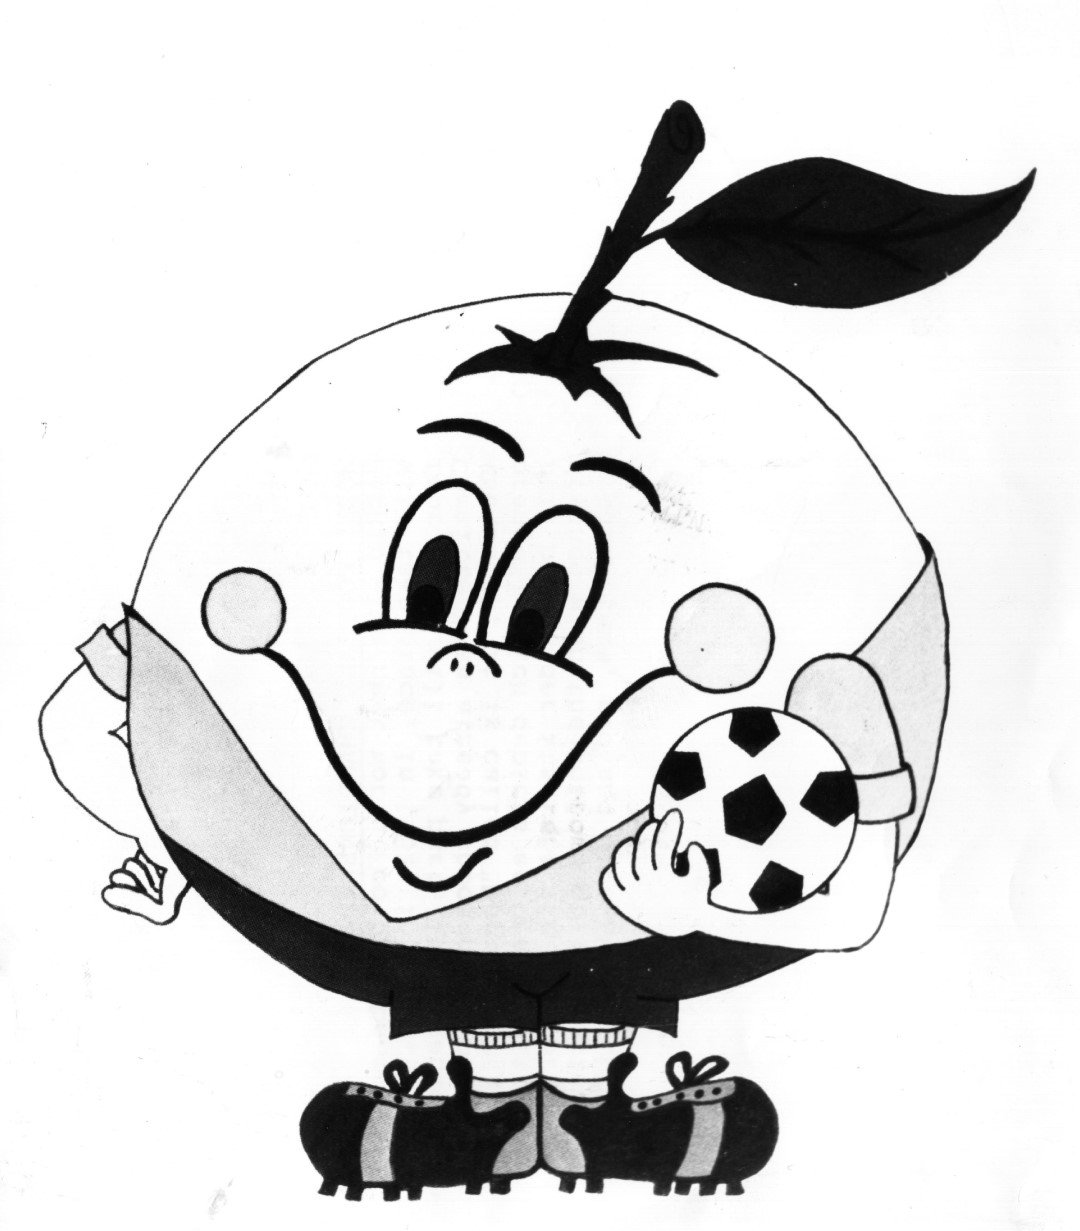 1982 г., Мондиал в Испания. Това е талисманът Наранито, вероятно първият, придобил глобална слава. Наранито има своята собствена история и беляза старта на серия талисманчета, които не са нито хора, нито животни. Това е една усмихната мандаринка с футболна топка